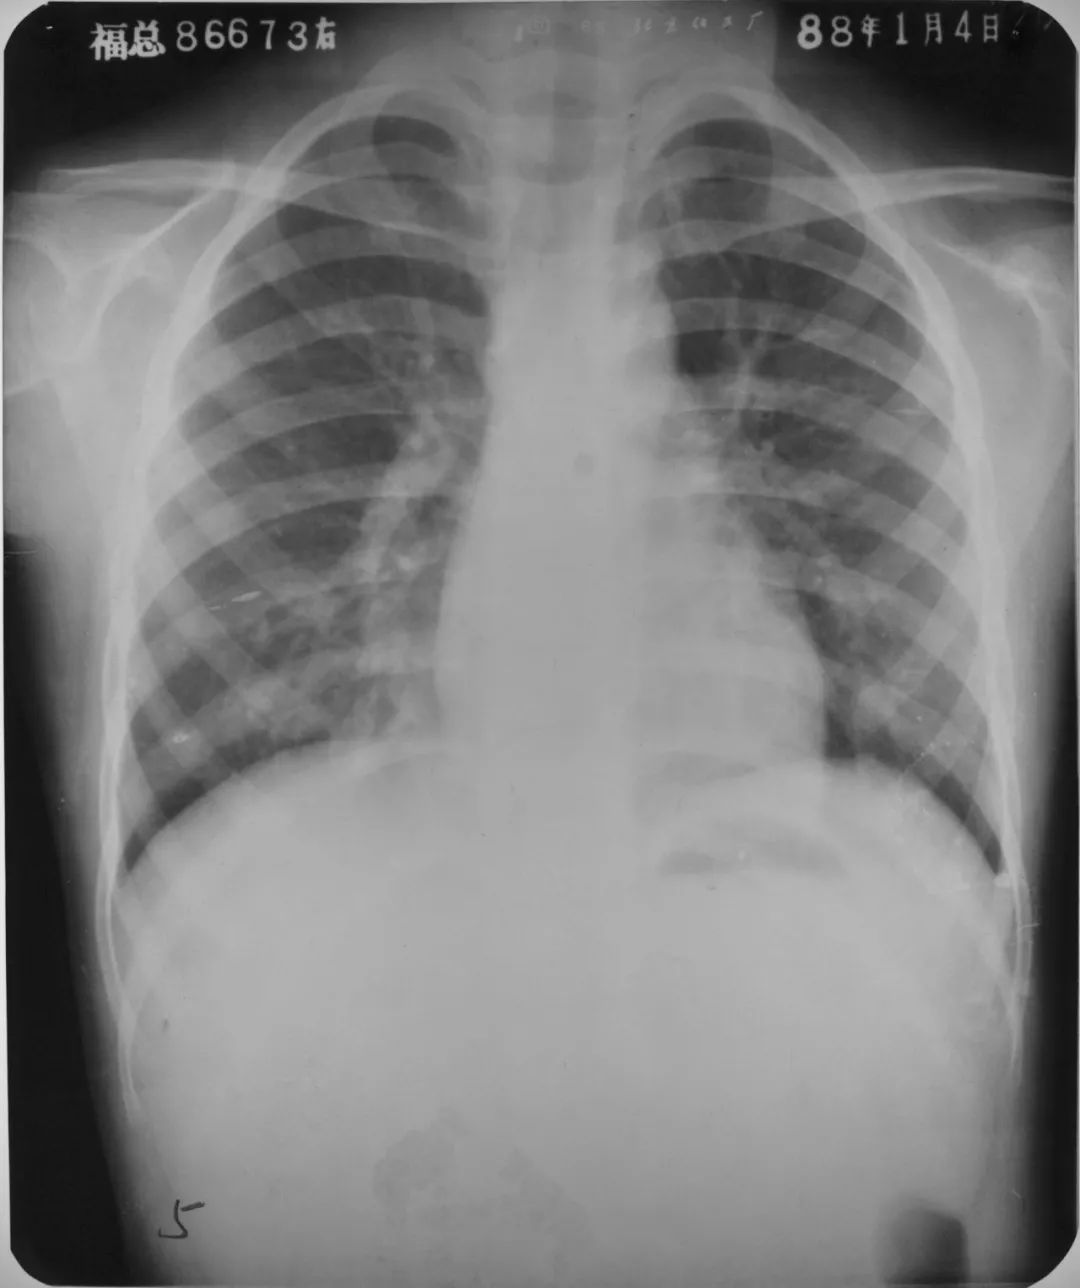 胸部 CT 入门：6 种最常见征象 + 相关疾病介绍 - 呼吸与胸部疾病讨论版 -丁香园论坛